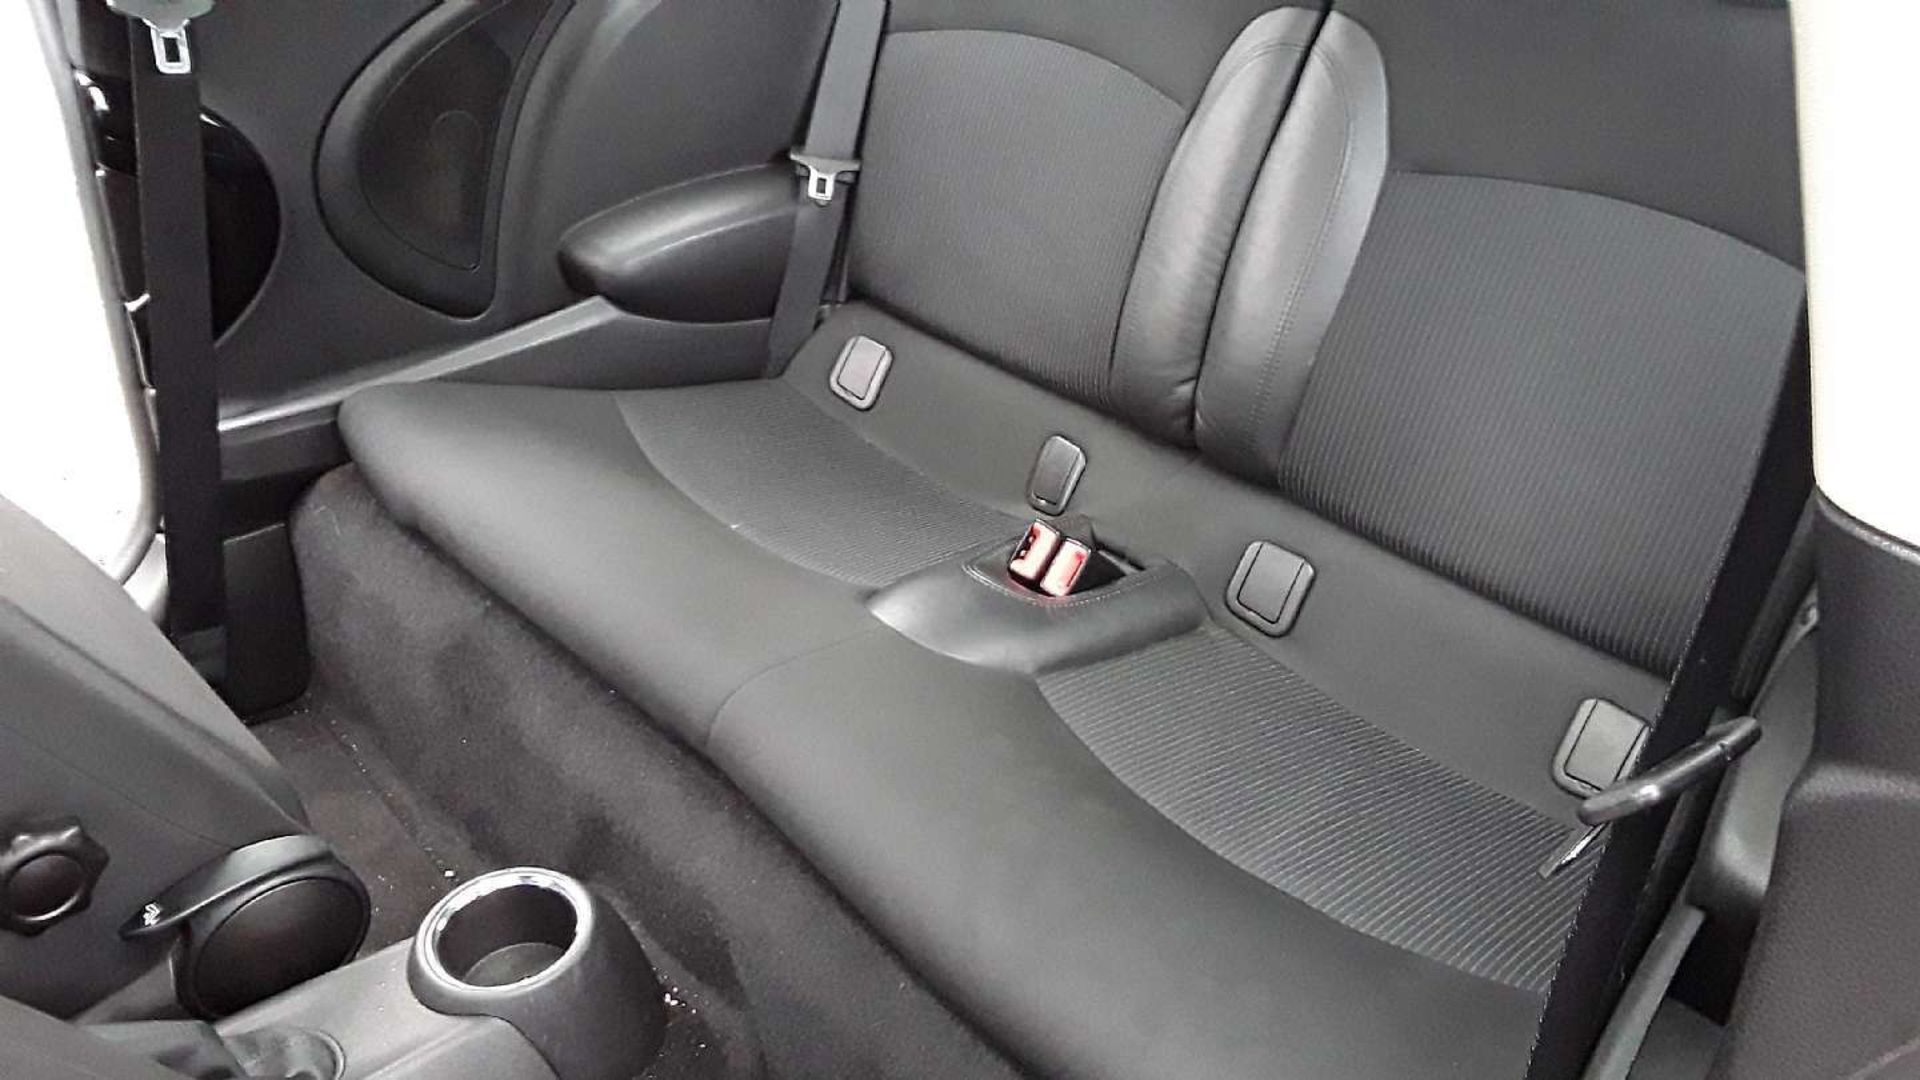 2011 Mini Cooper 1.6 S 3 Door Hatchback - 82,530 miles - 2 keys - Image 12 of 23